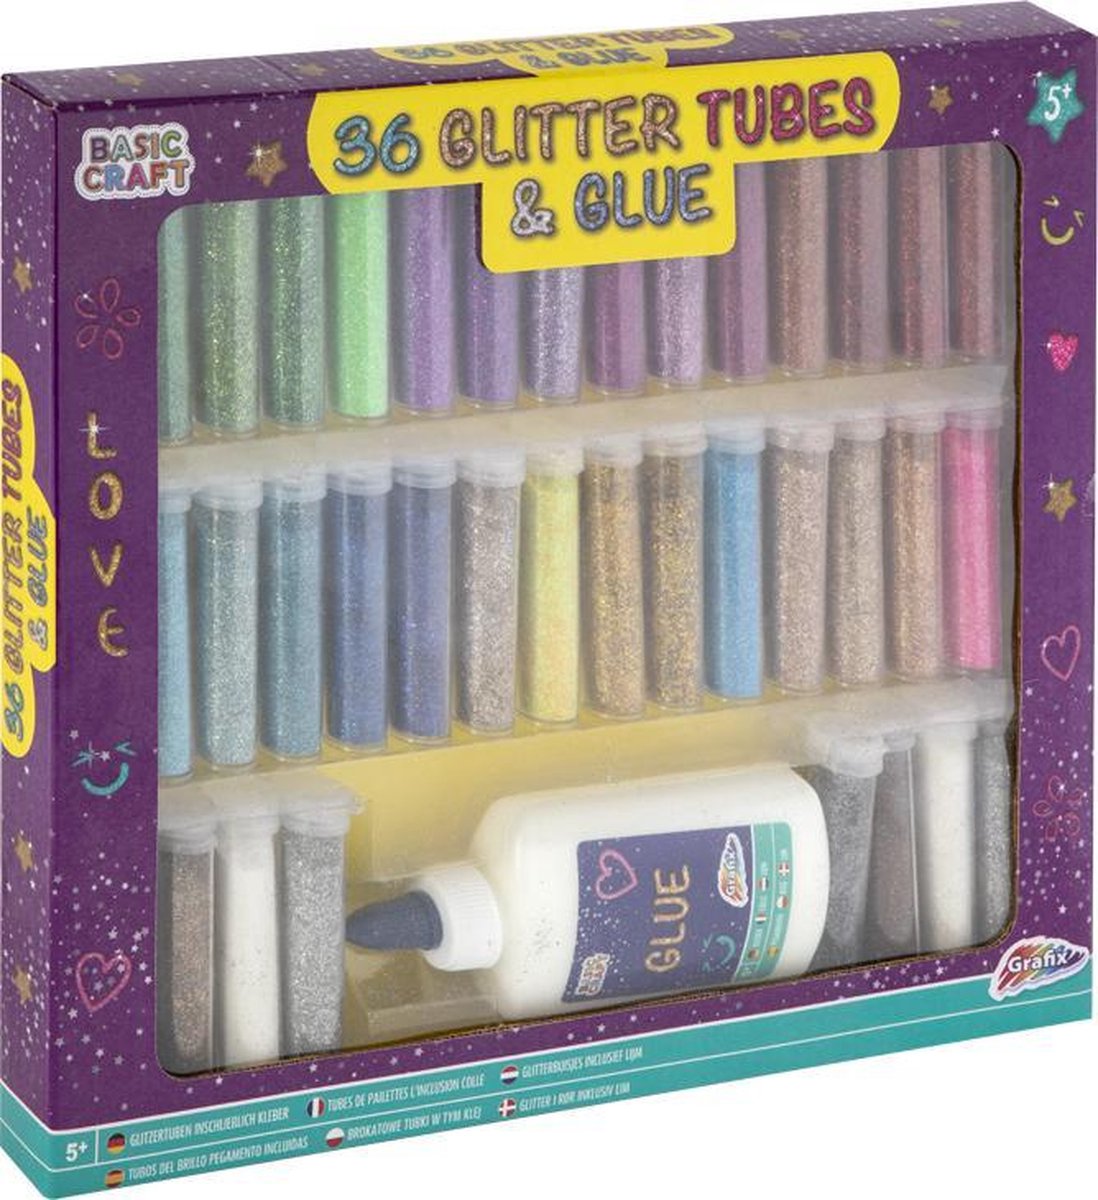 36 glitterbuisjes inclusief hobbylijm van Grafix - knutselen voor kinderen - glitters knutsel - strooi glitter